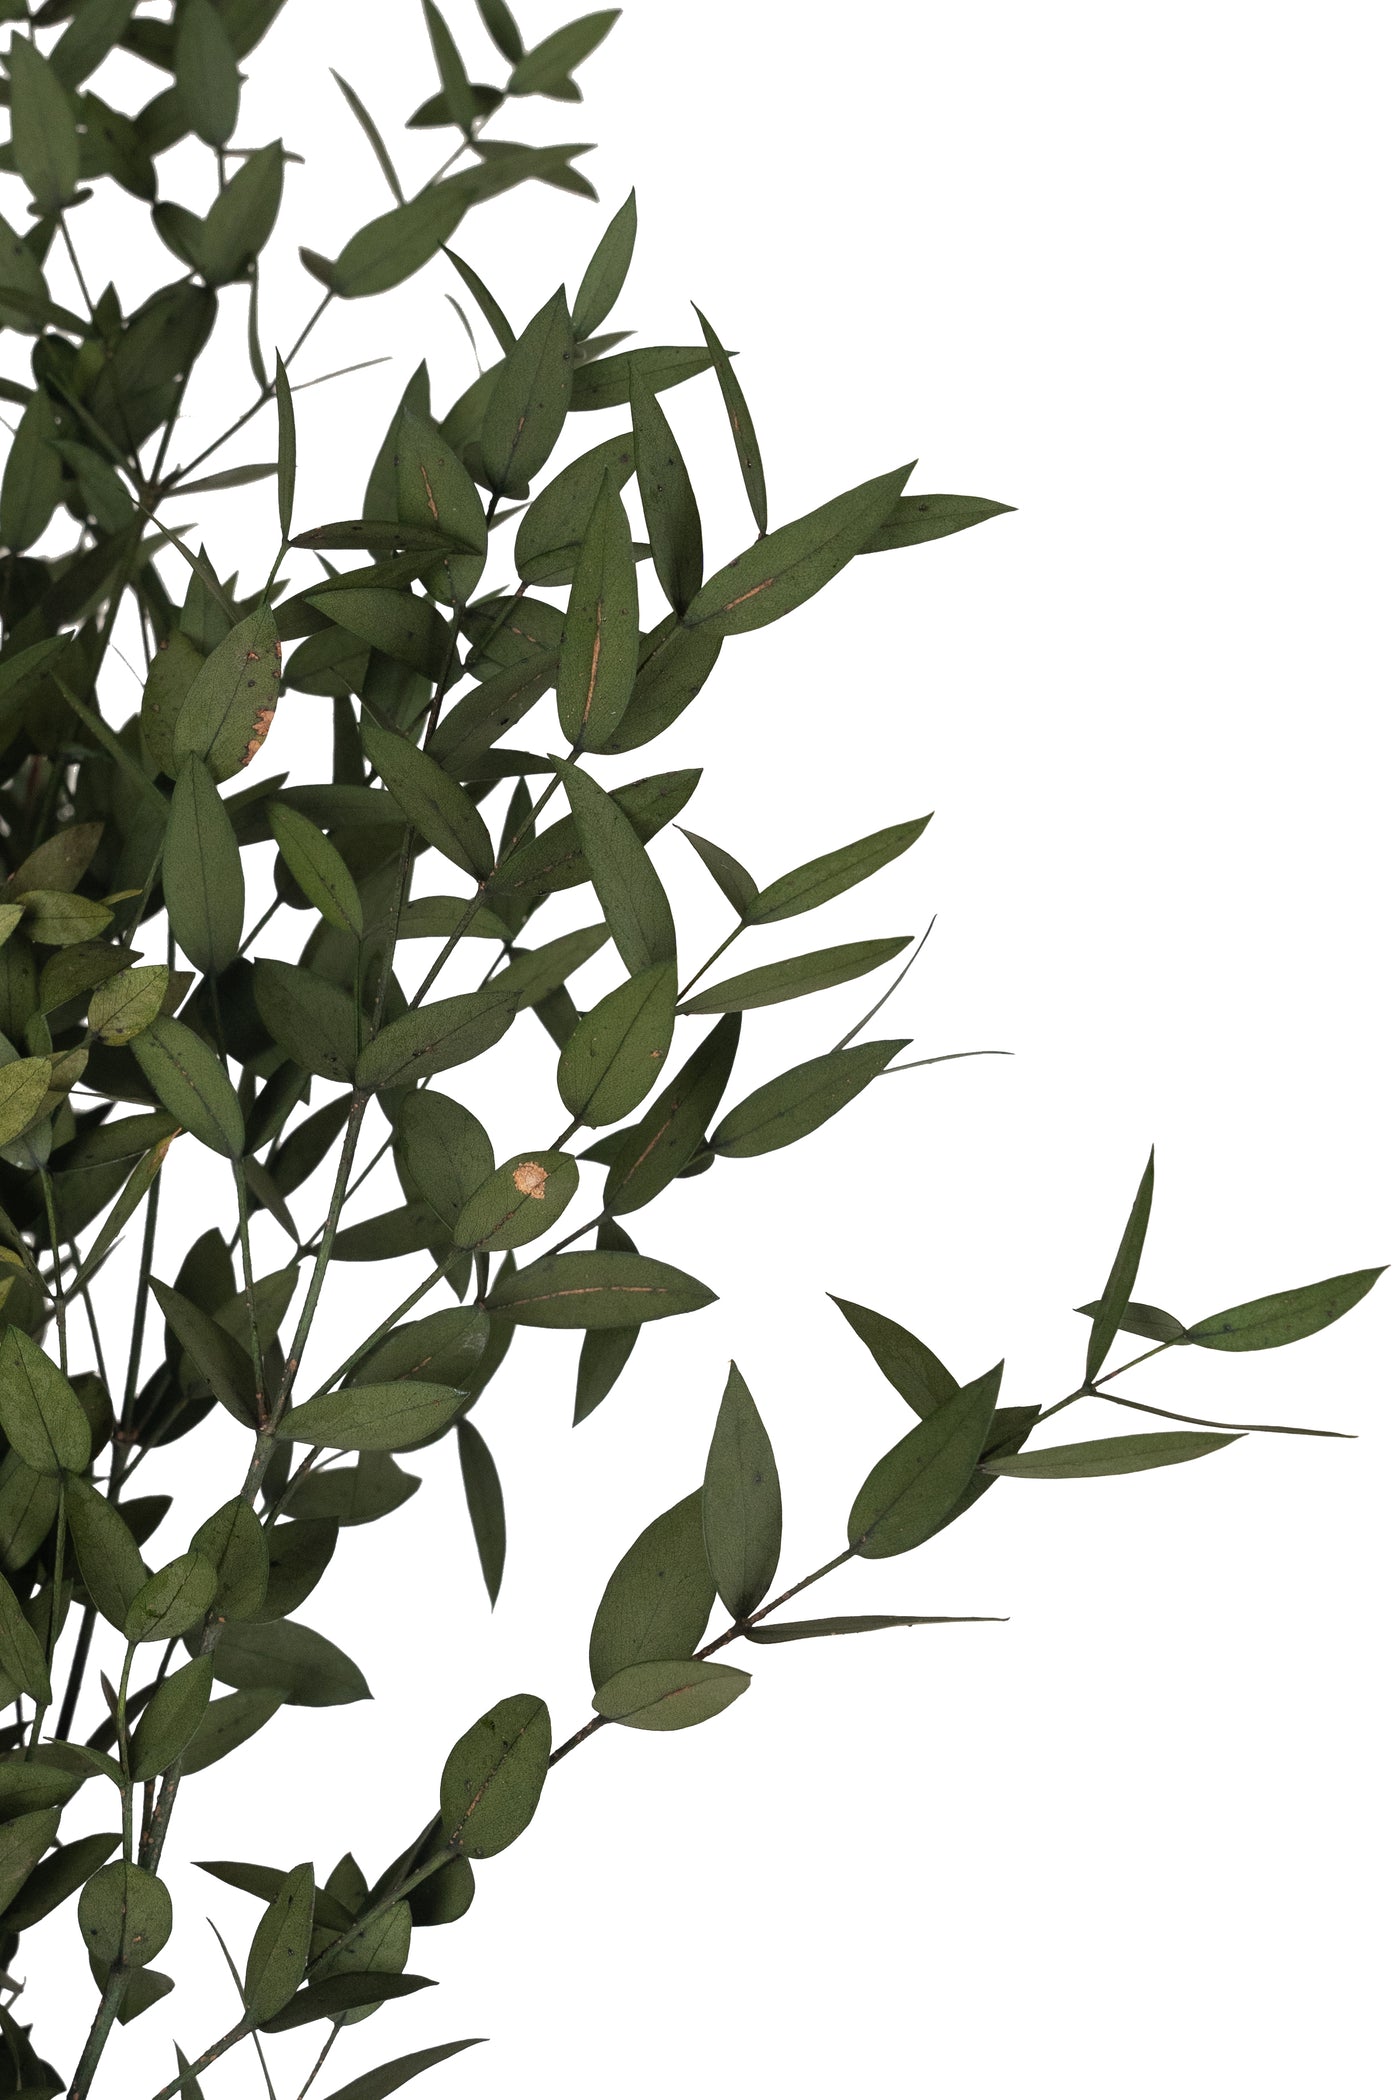 Crenguta conservata de Eucalipt parvifolia H60-70 cm. galbena